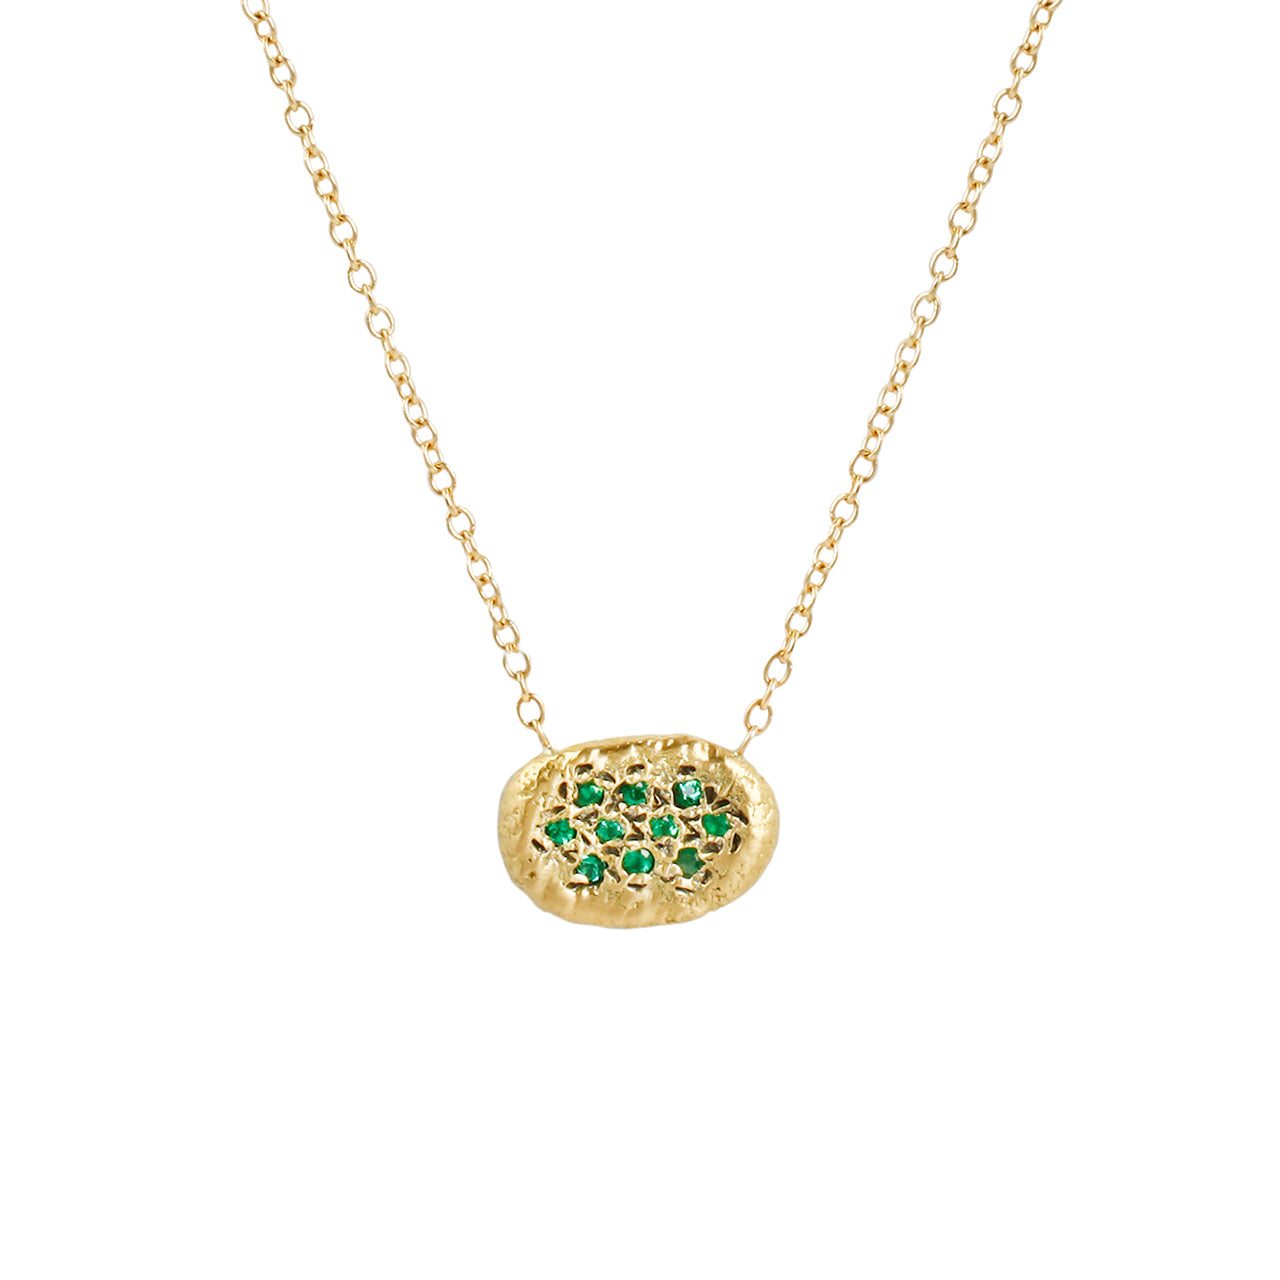 Emerald night sky necklace